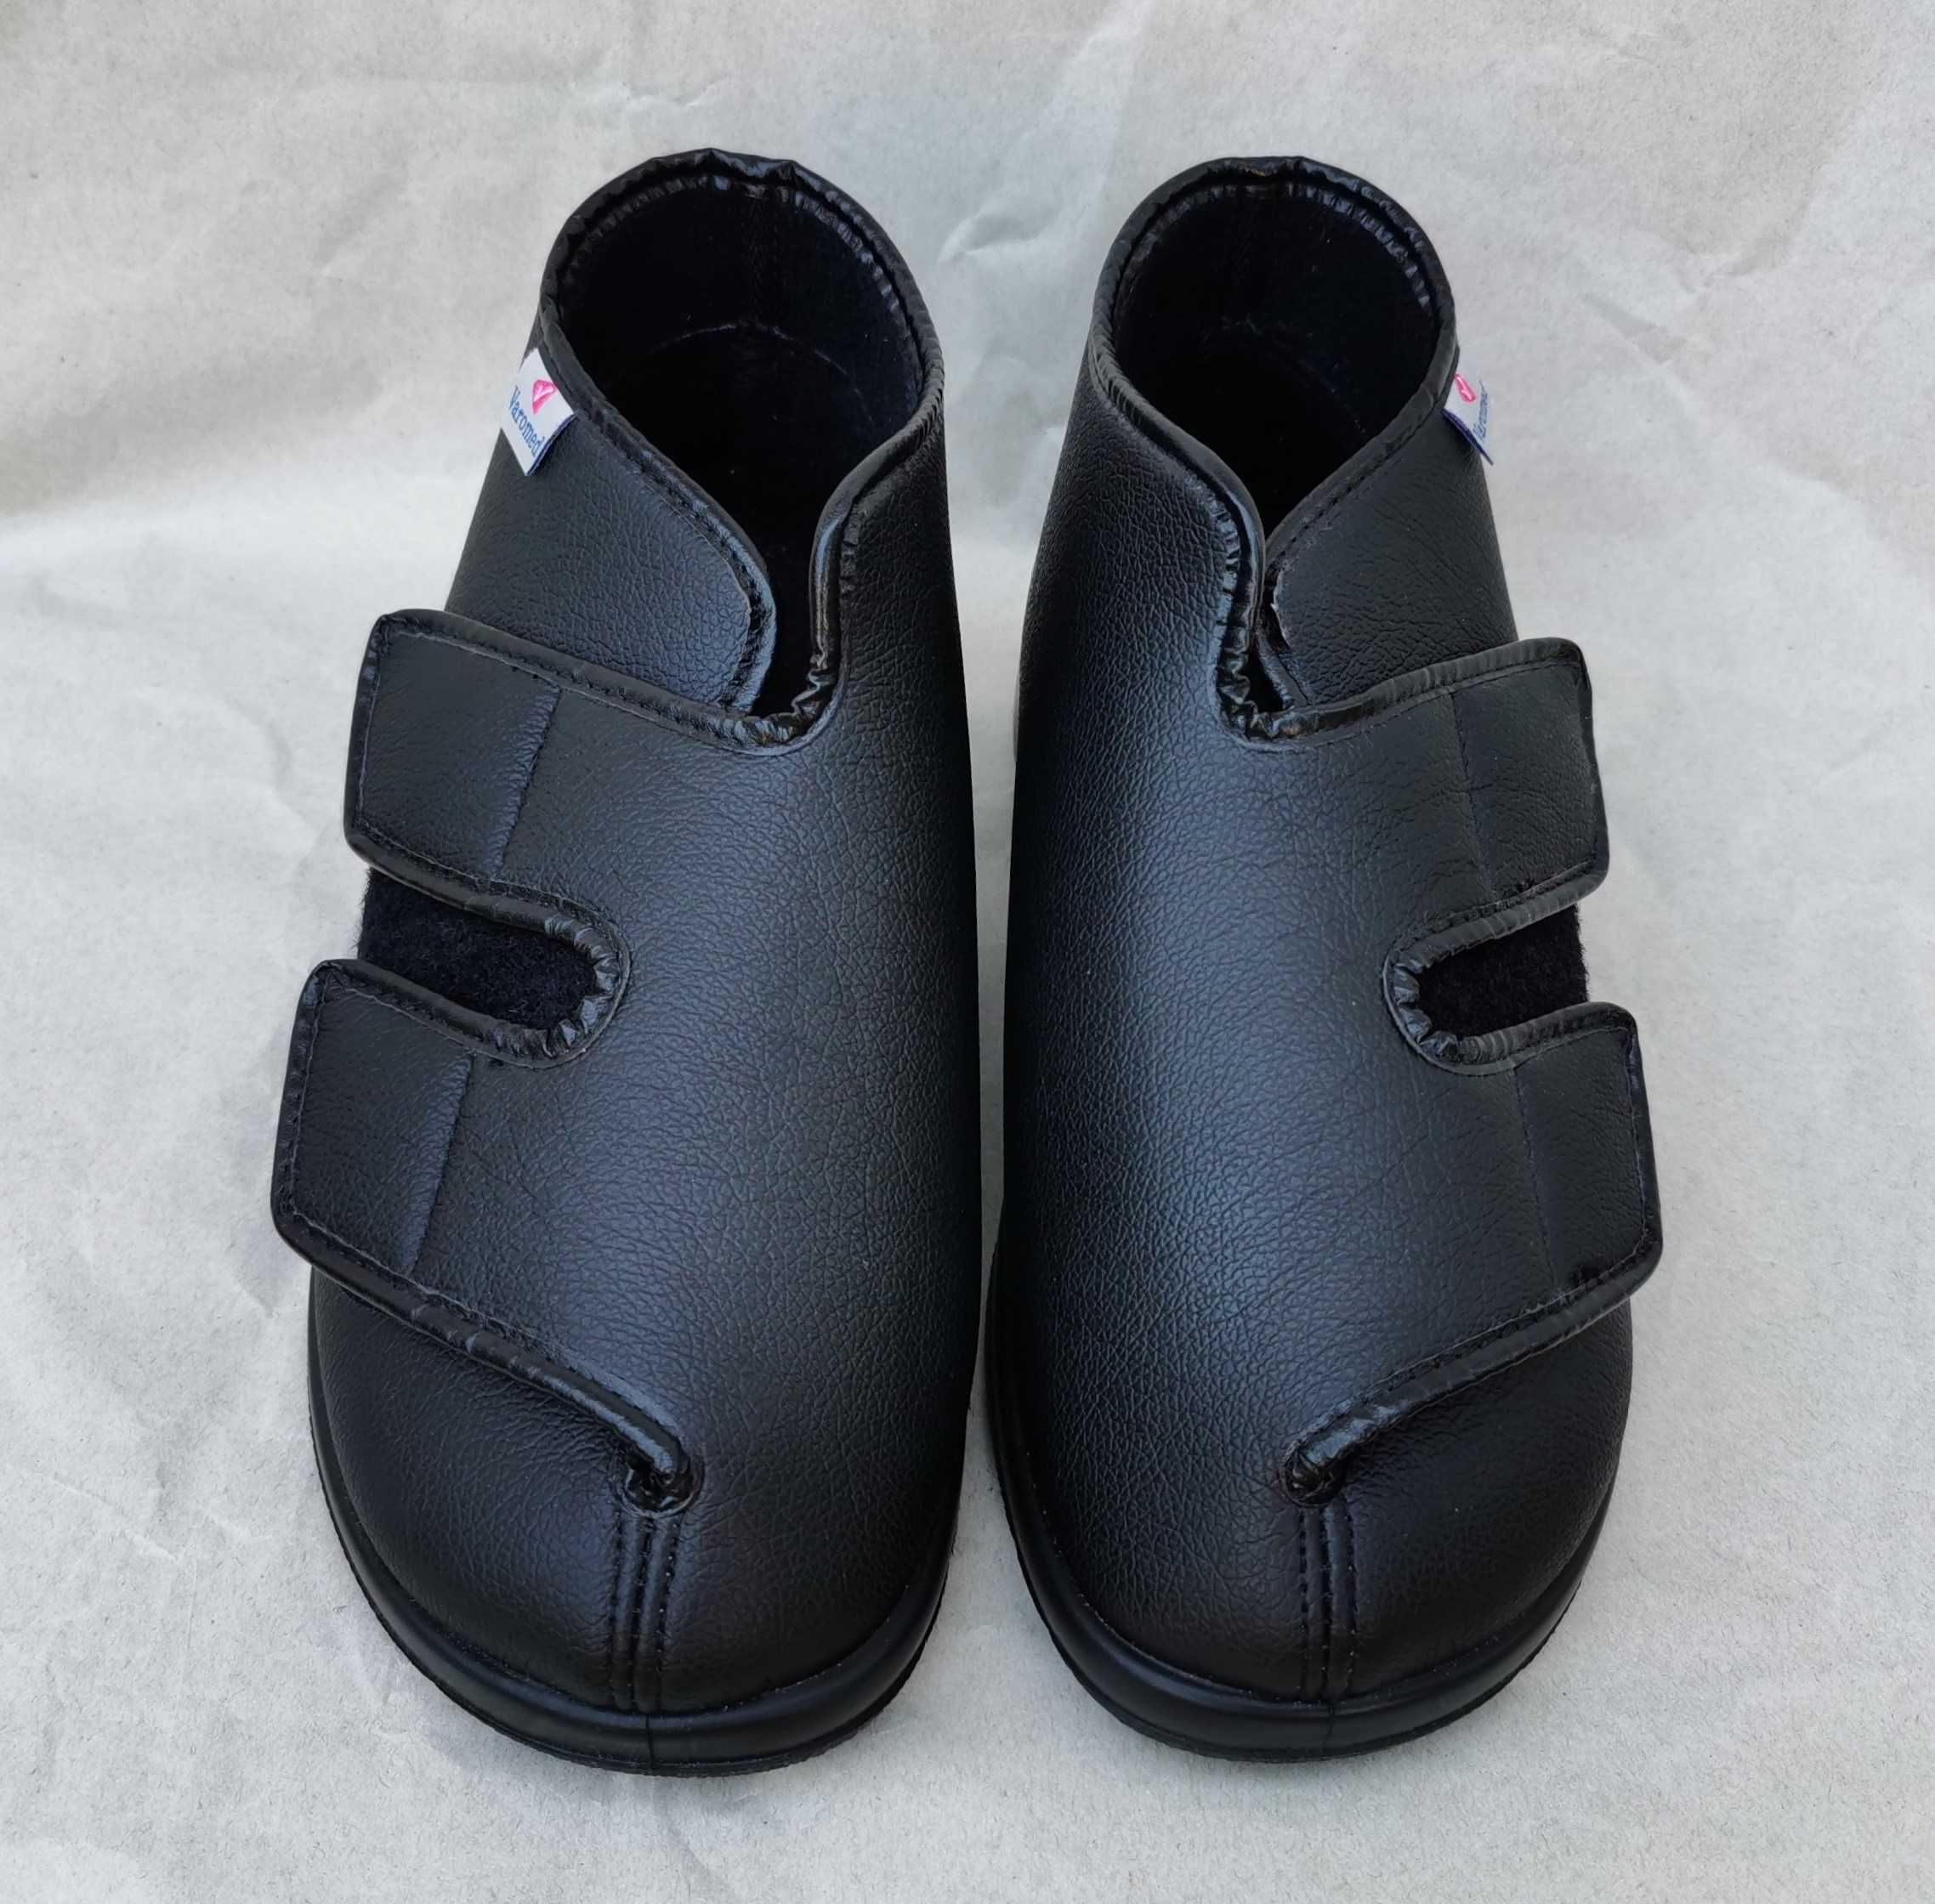 Ботинки Varomed бандажные туфли 40 р. реабилитационная обувь Германия